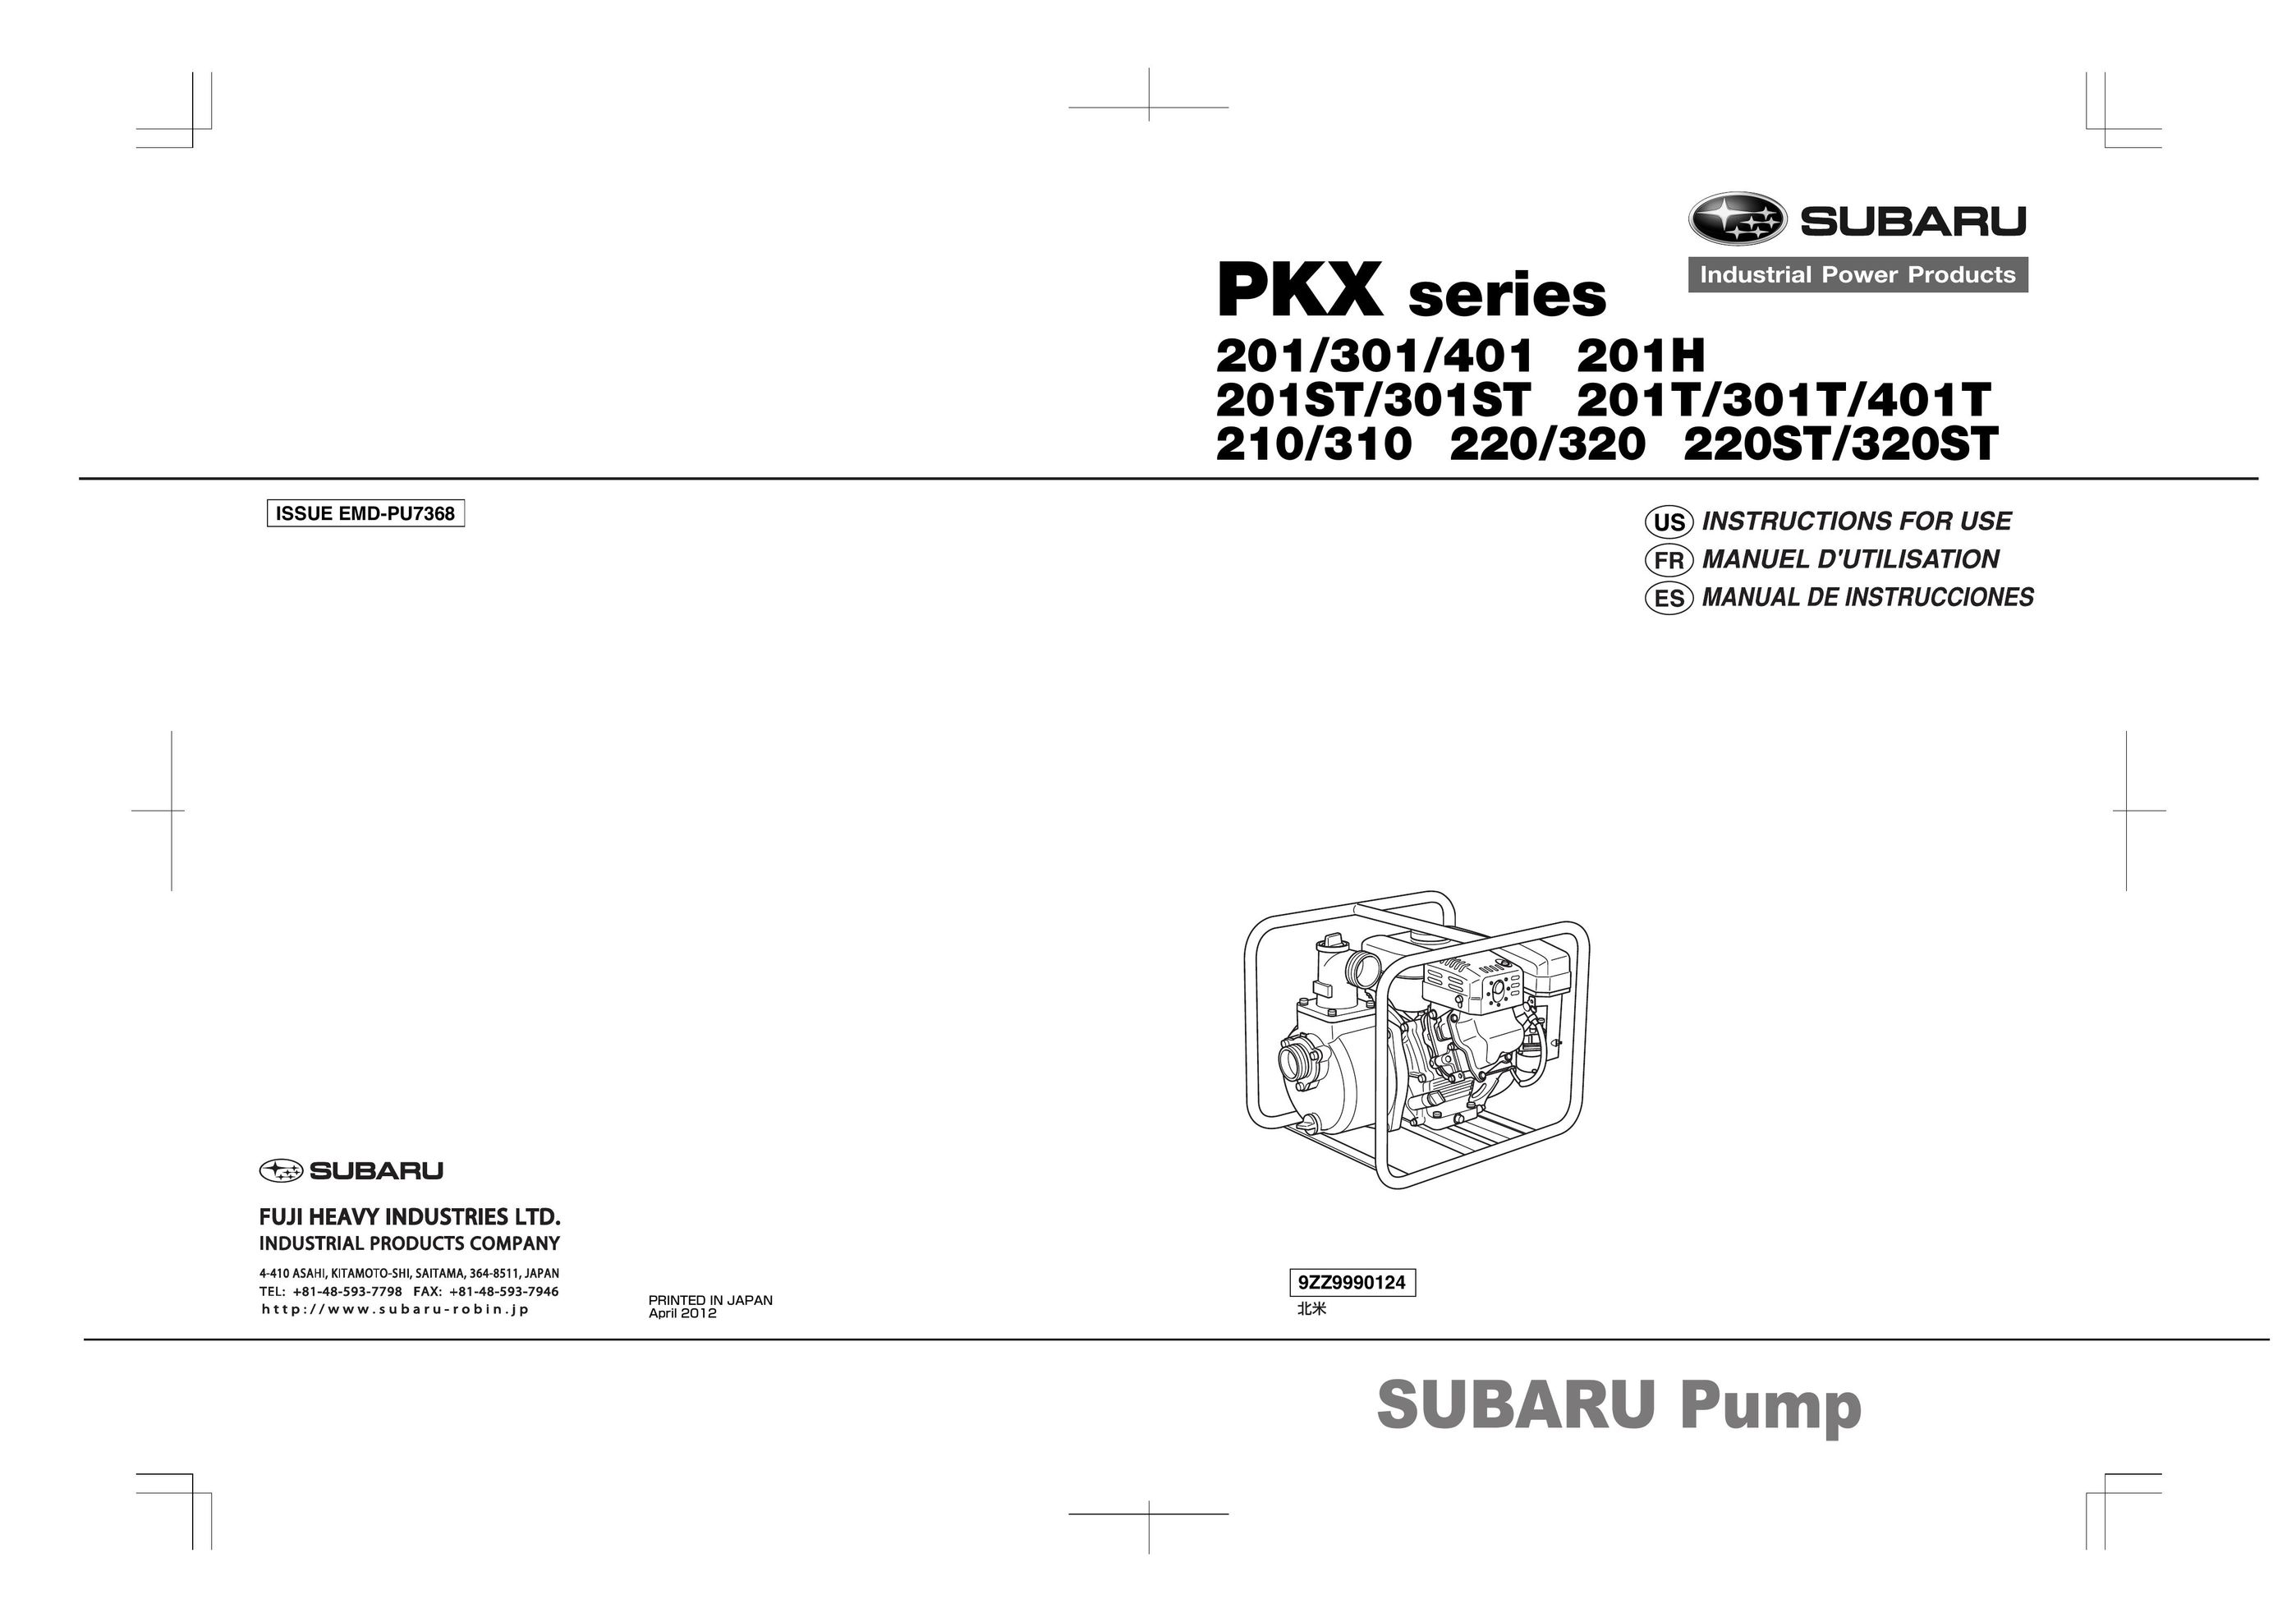 Subaru 401T Heat Pump User Manual